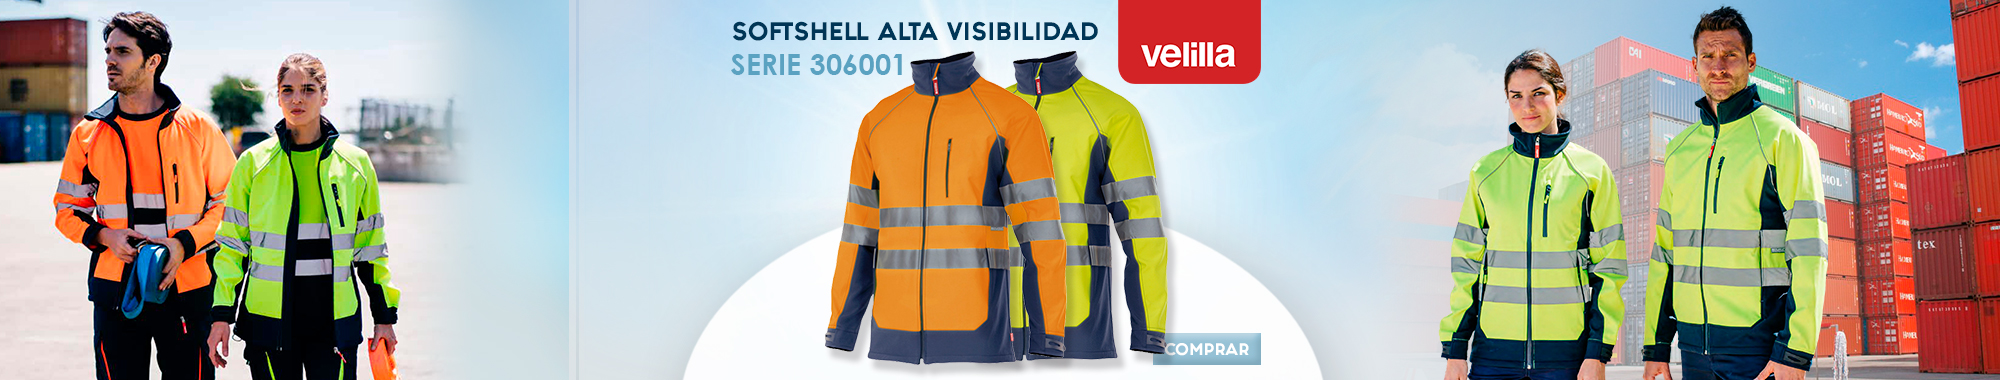 Softshell Alta Visibilidad Velilla 306001